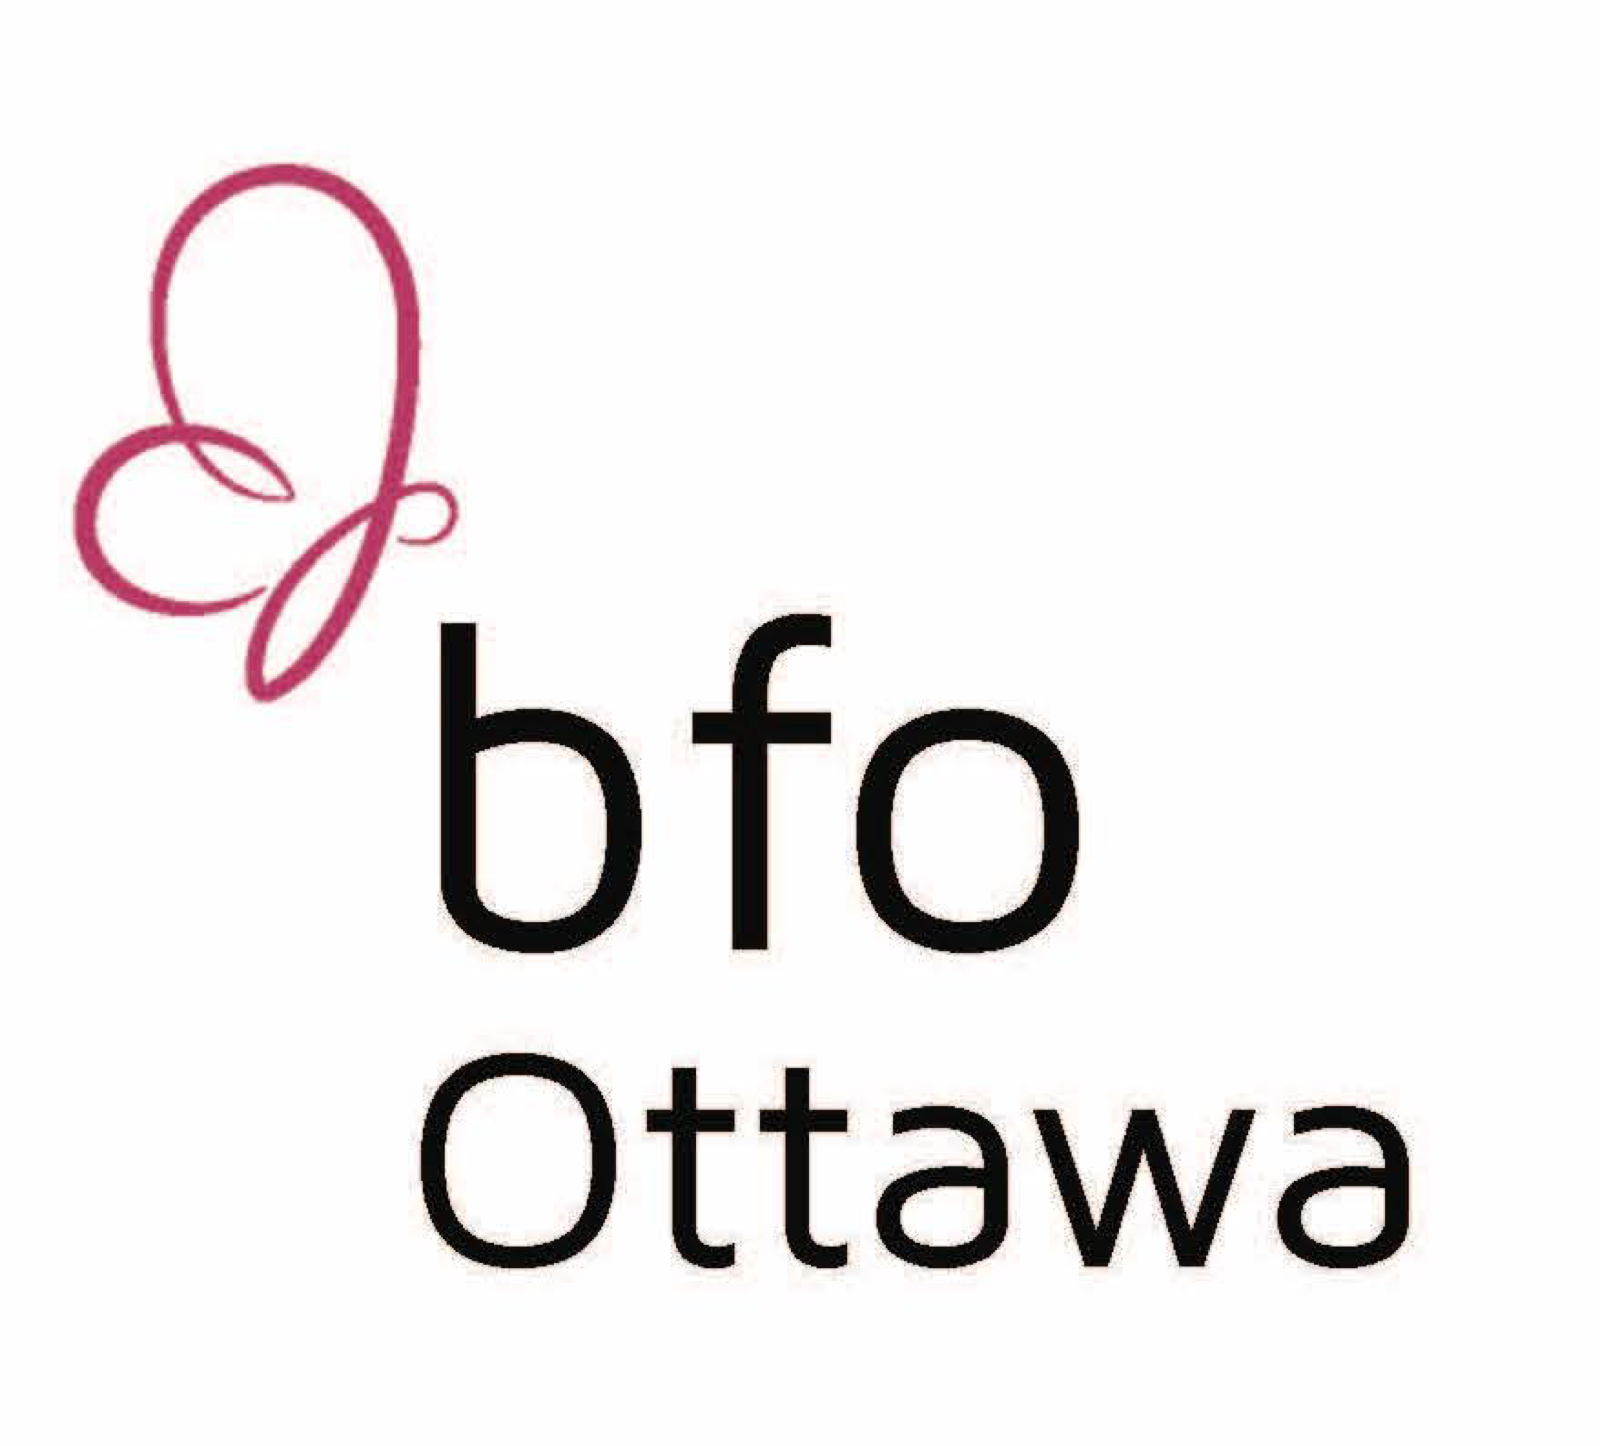 BFO Ottawa logo